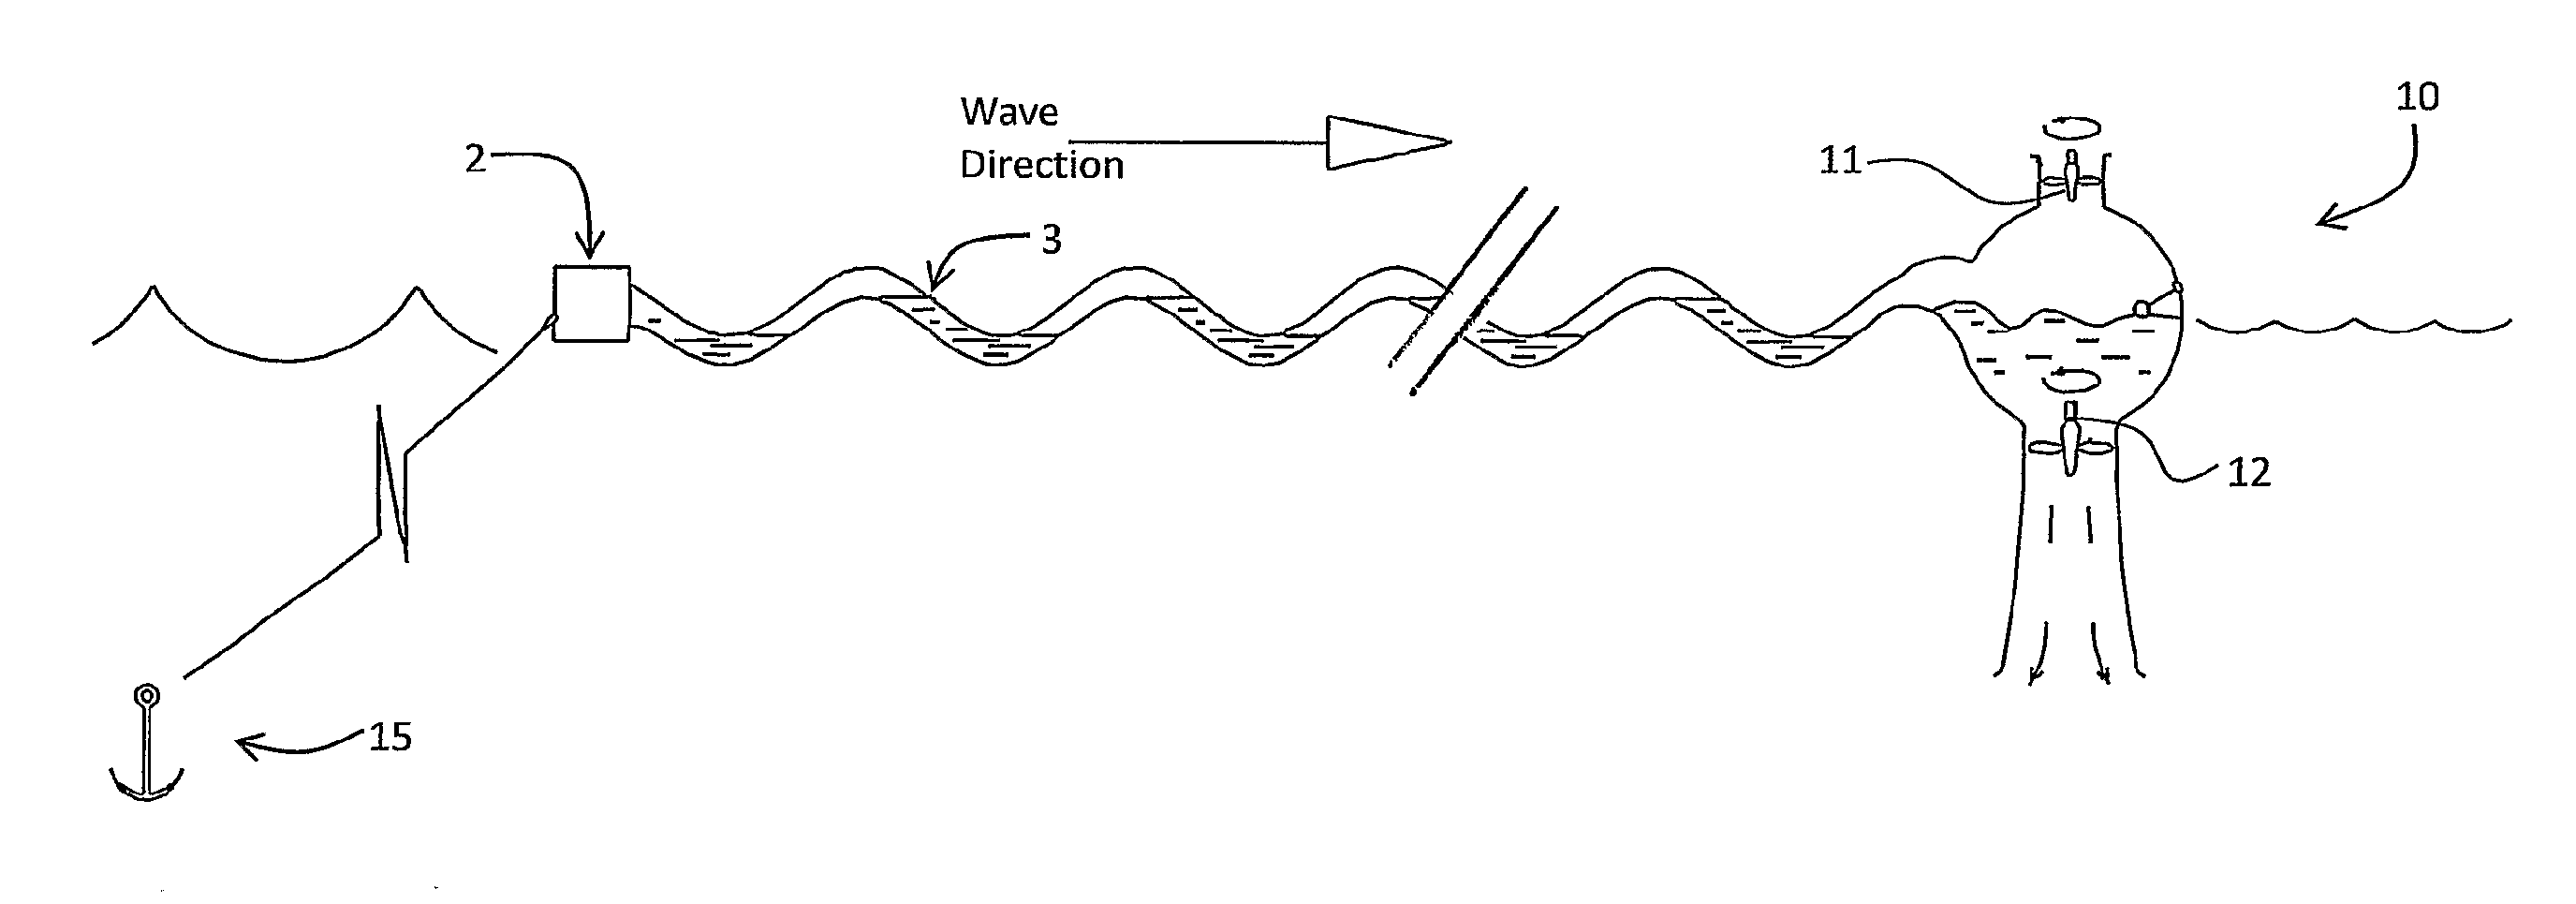 Wave energy converter